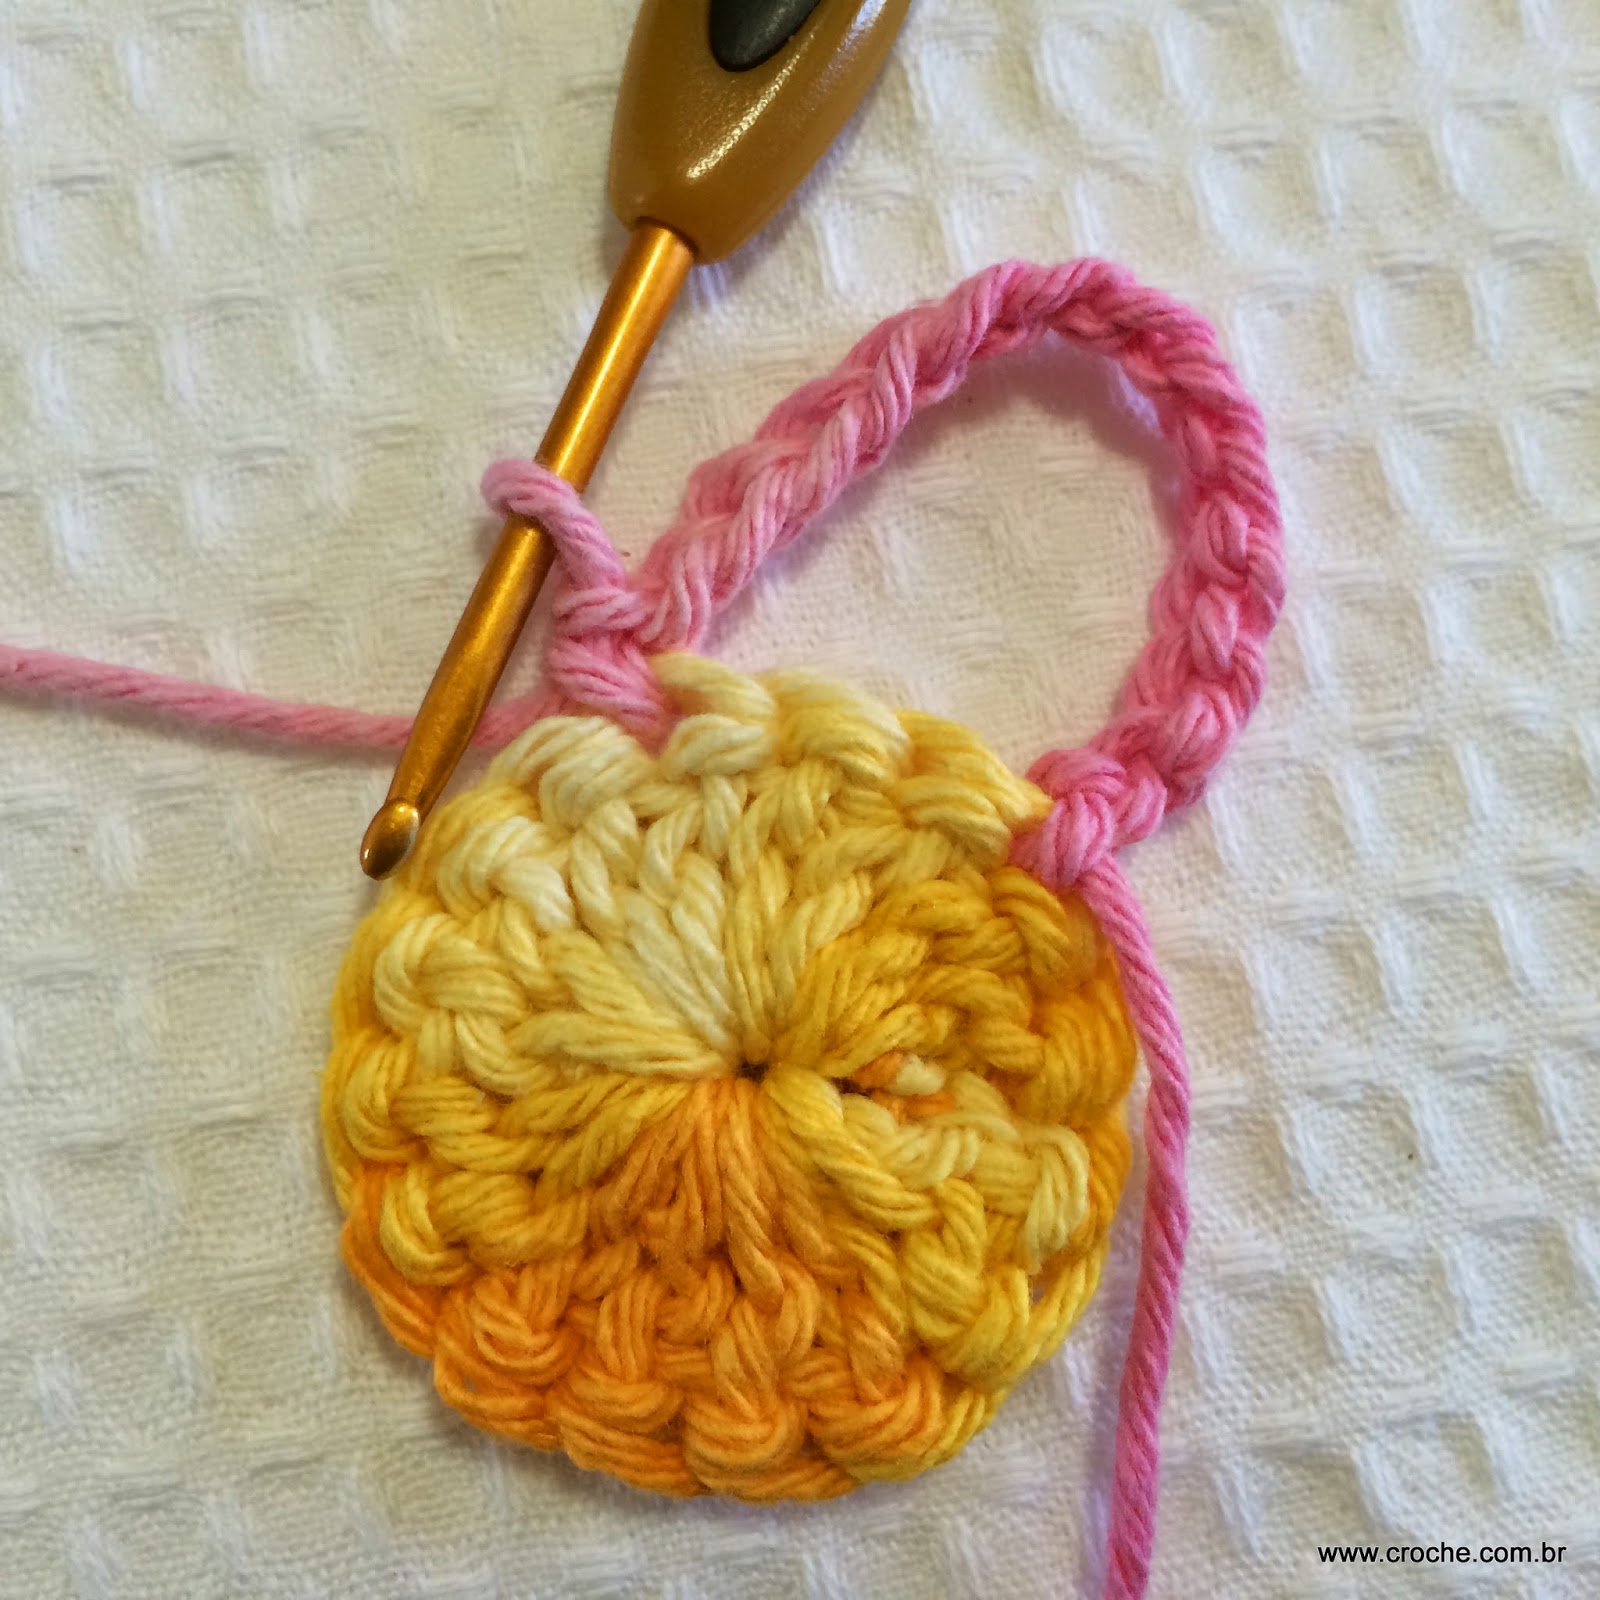 Aprenda como fazer 9 tipos de flores de crochê sem sair de casa!